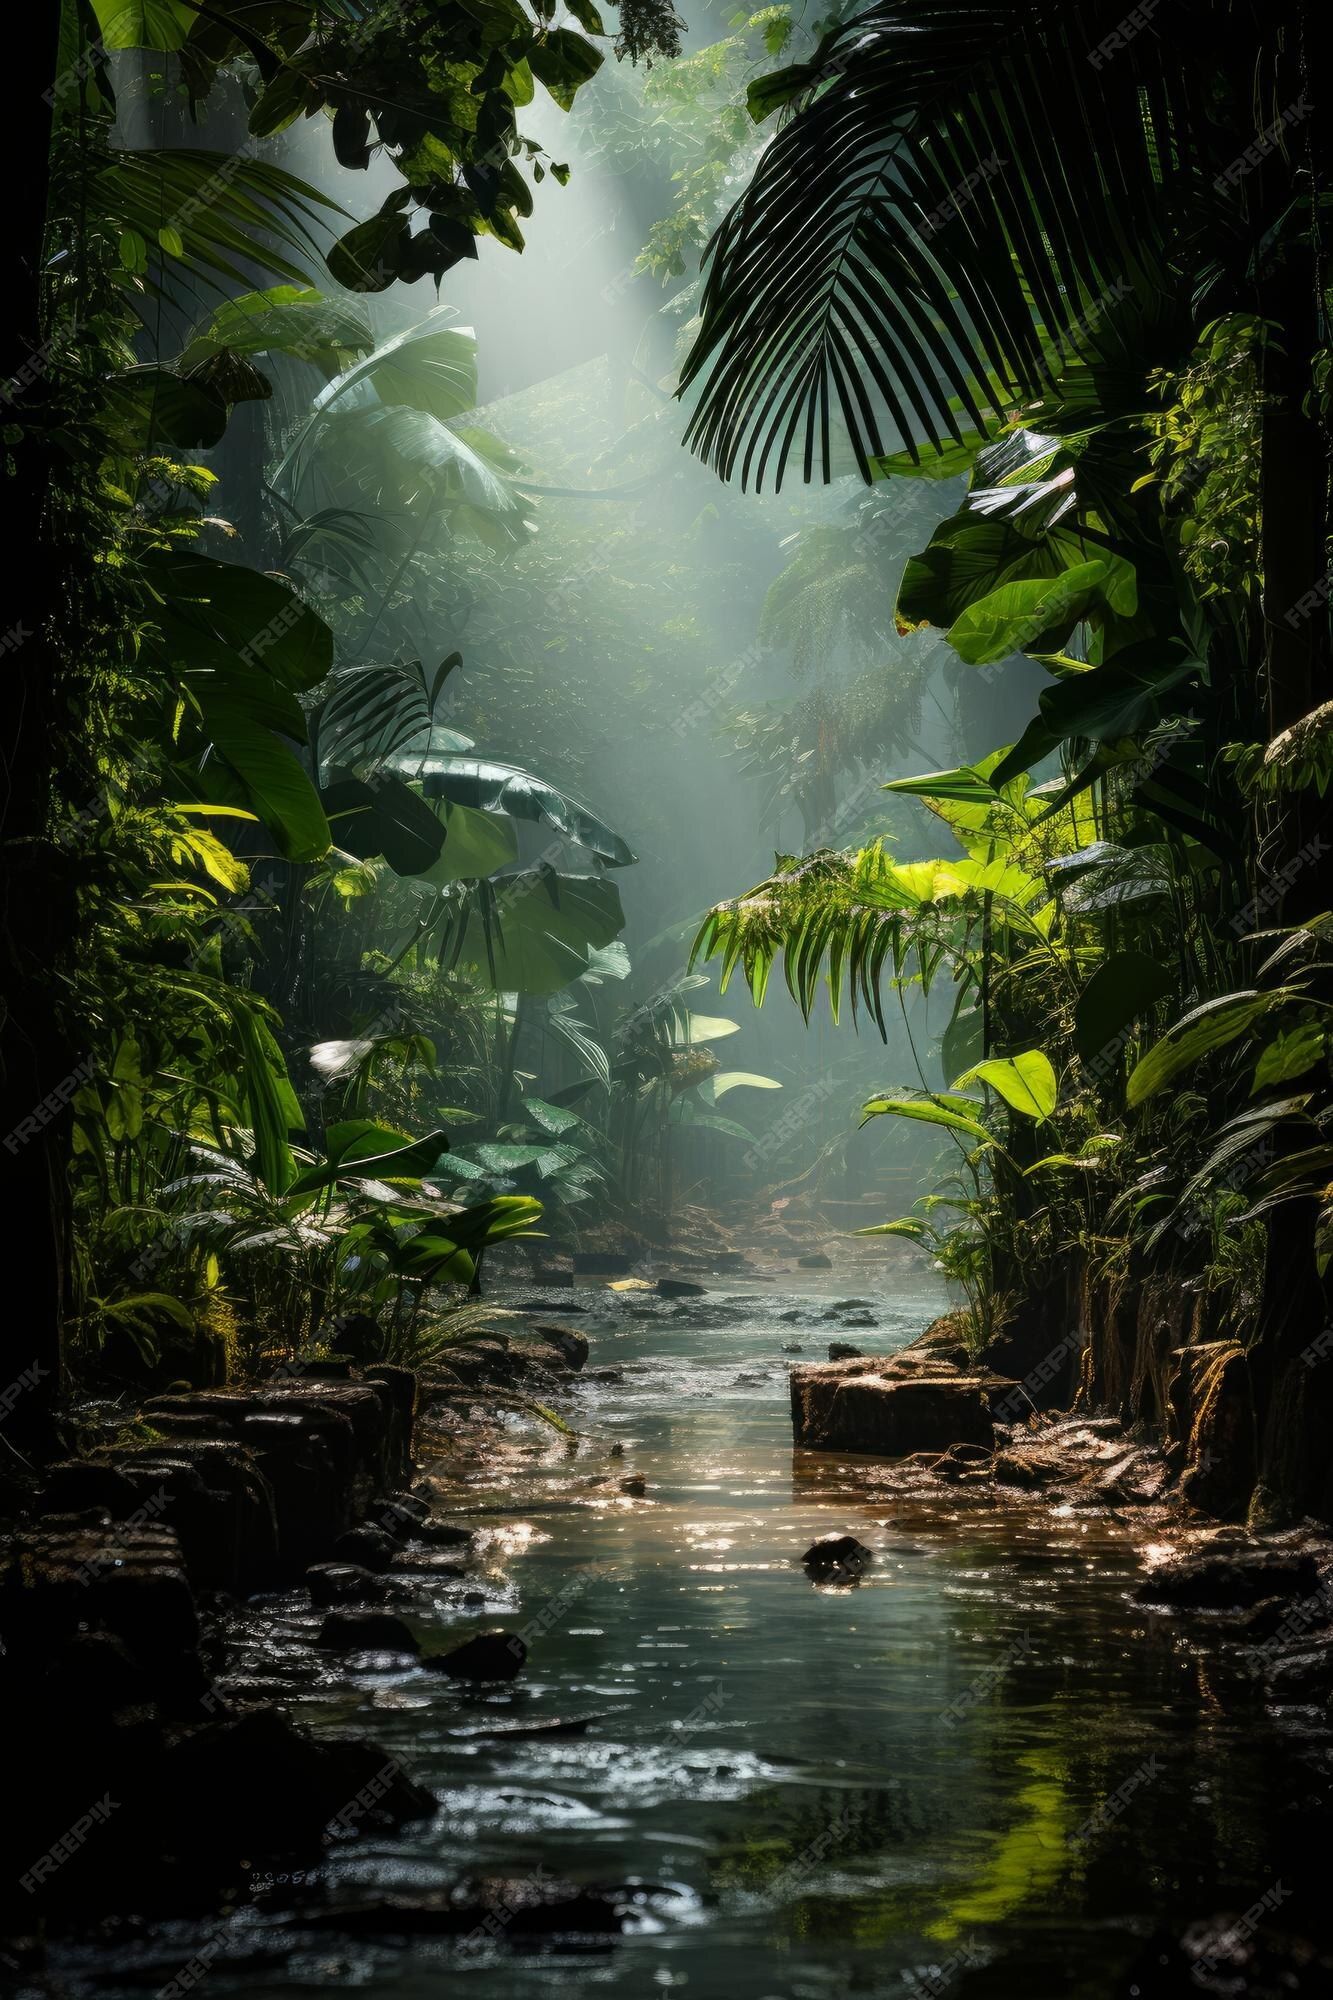 Stream in a tropical rainforest - Jungle